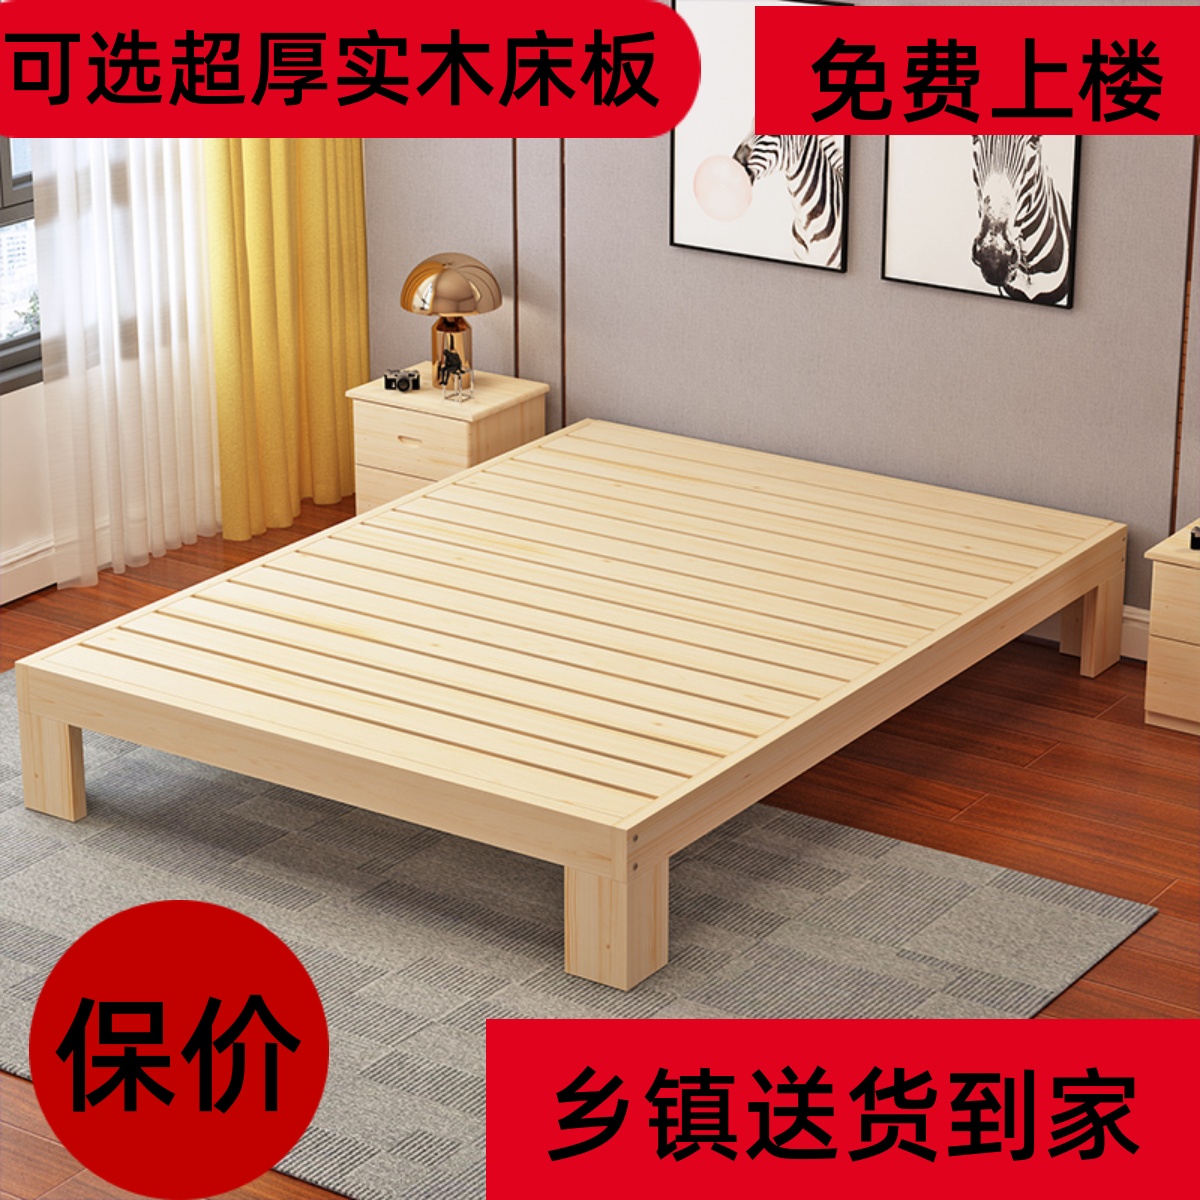 1.8 实木床松木床单人床双人床简约成人床儿童床简易床定做床1.5